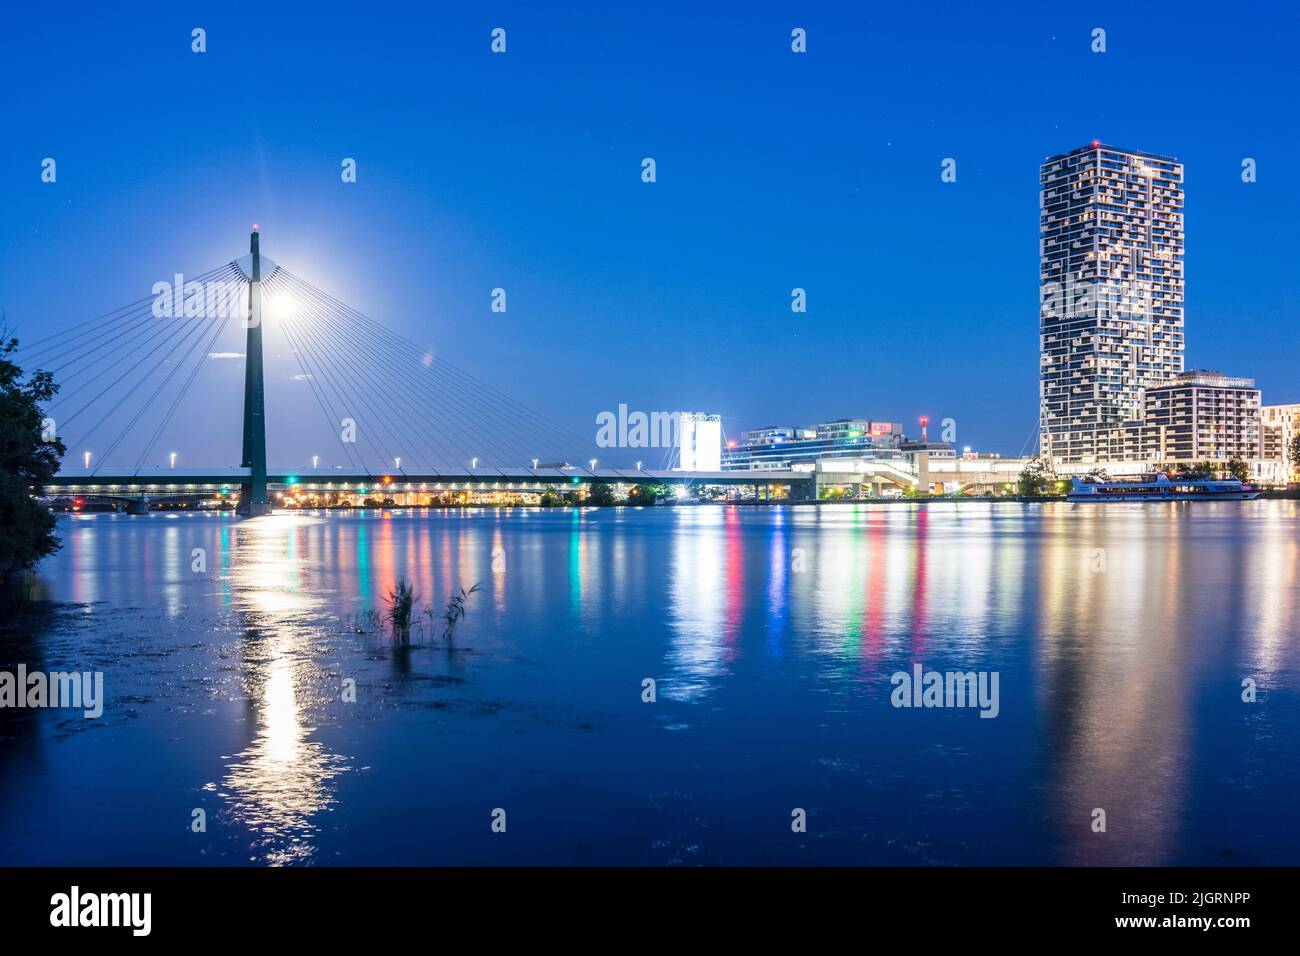 Viena, Viena: río Donau (Danubio), torre de altura Marina, puente subterráneo Donaustadtbrücke, luna llena, vista desde la isla Donauinsel en 02. Leopoldstadt Foto de stock